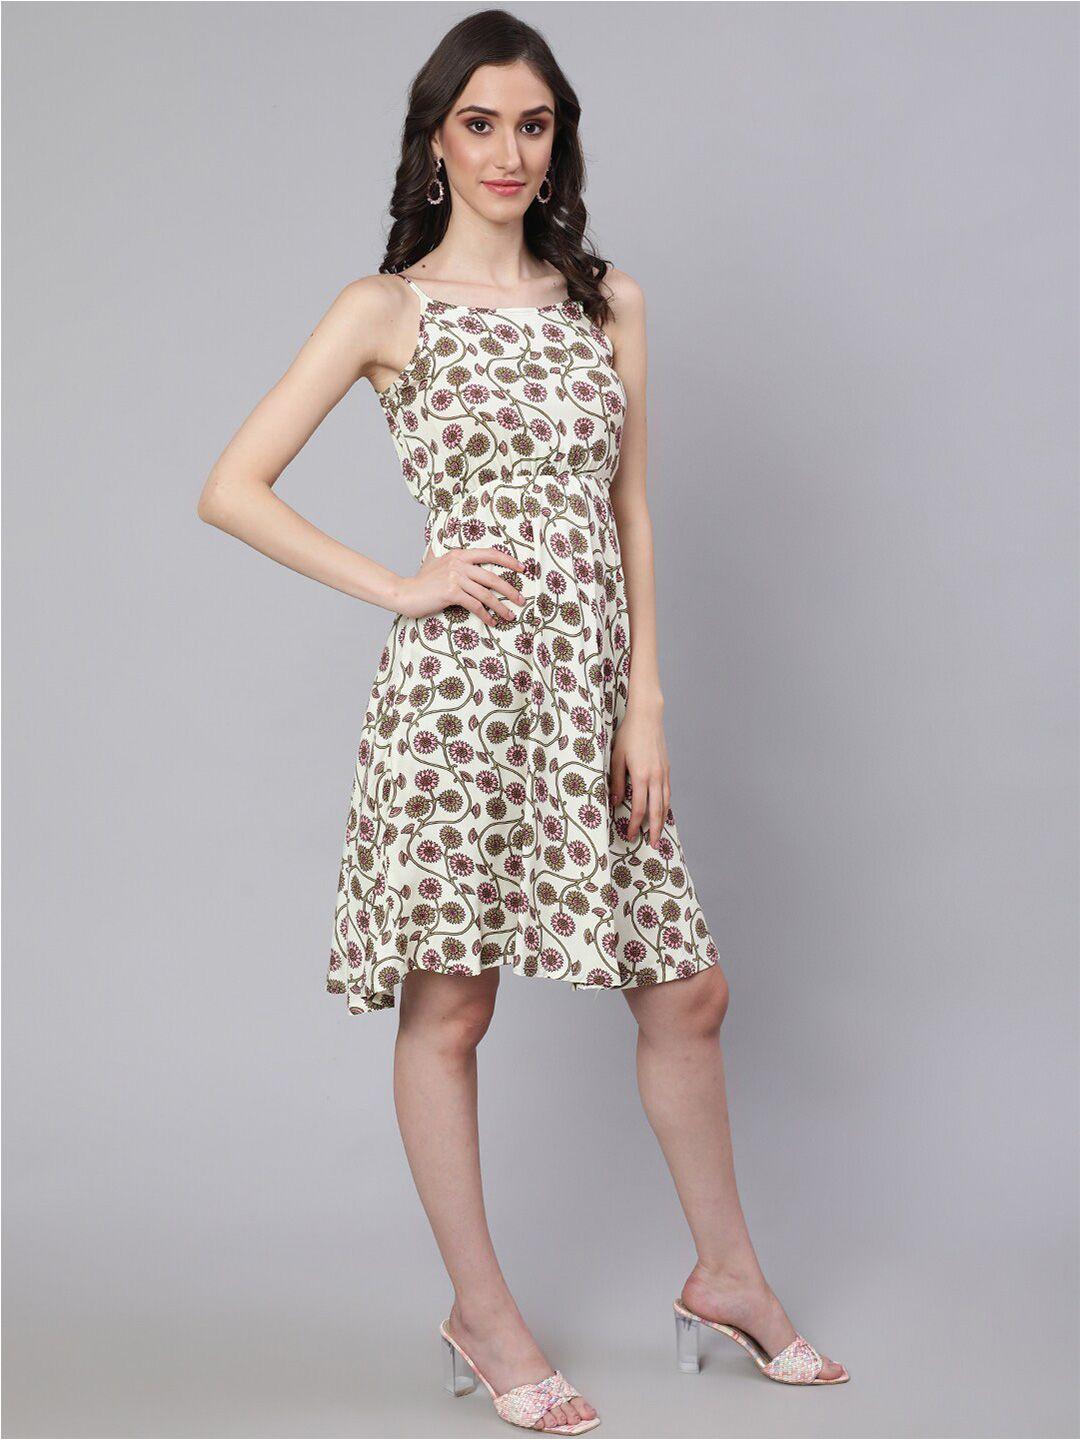 daevish floral printed shoulder straps a-line dress